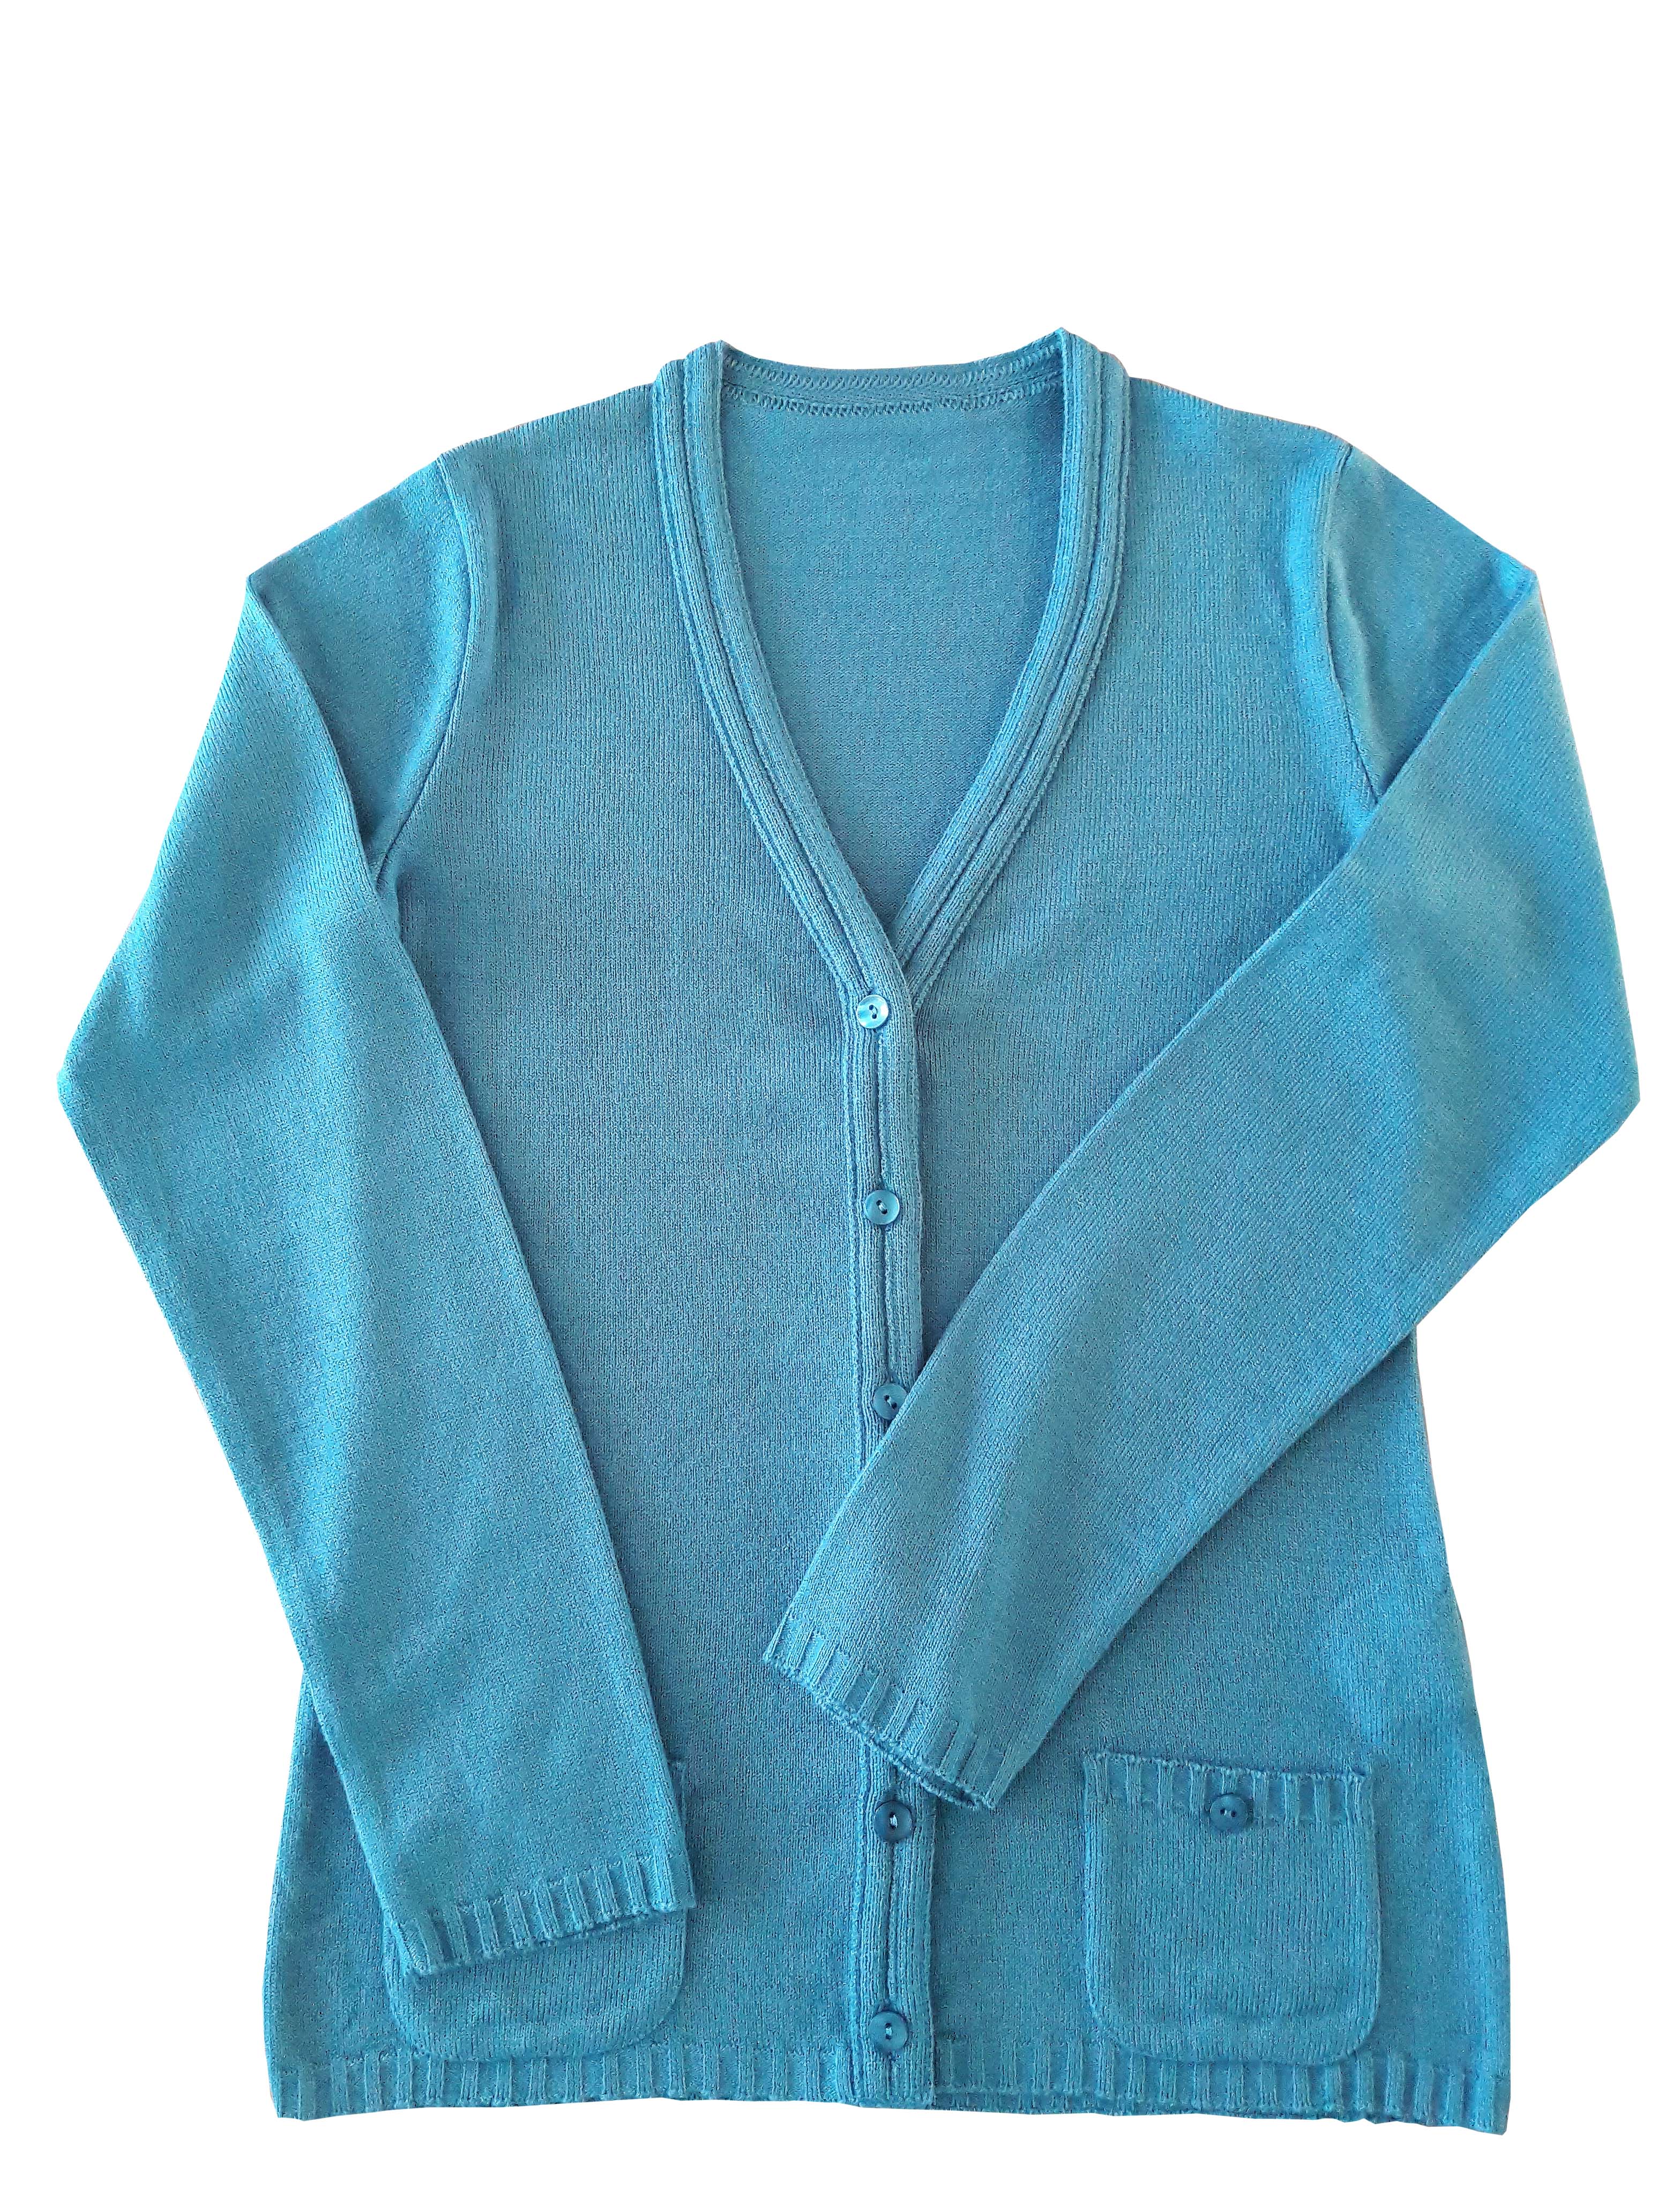 Chaqueta azul cielo - Tejidos y Textiles Técnicos